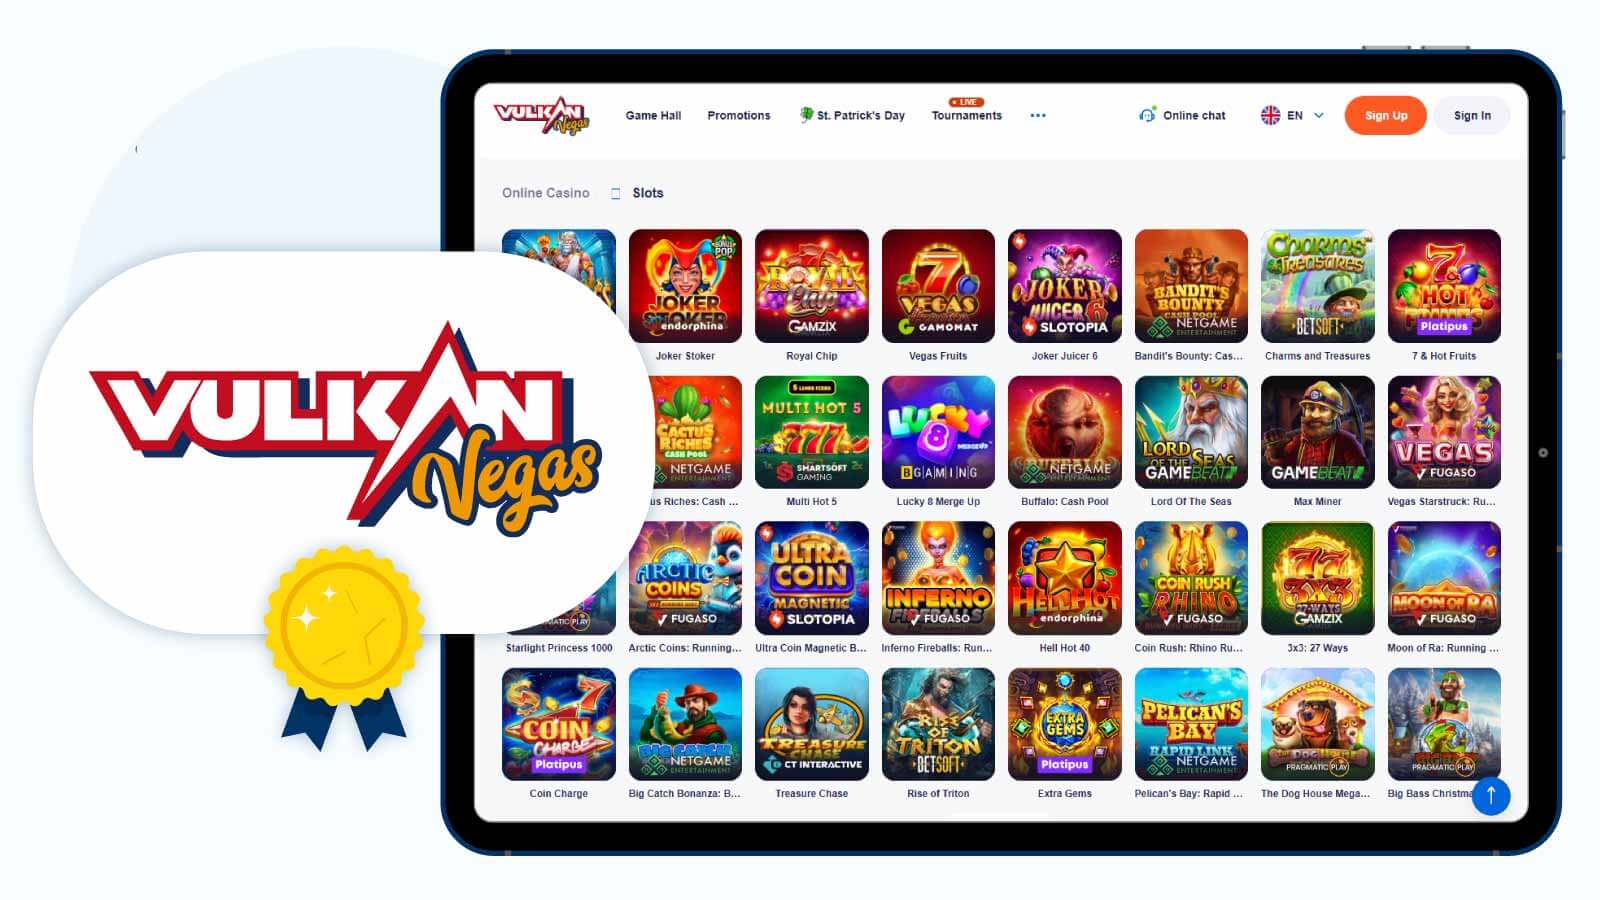 Vulkan Vegas Casino Best Online Casino for Slots